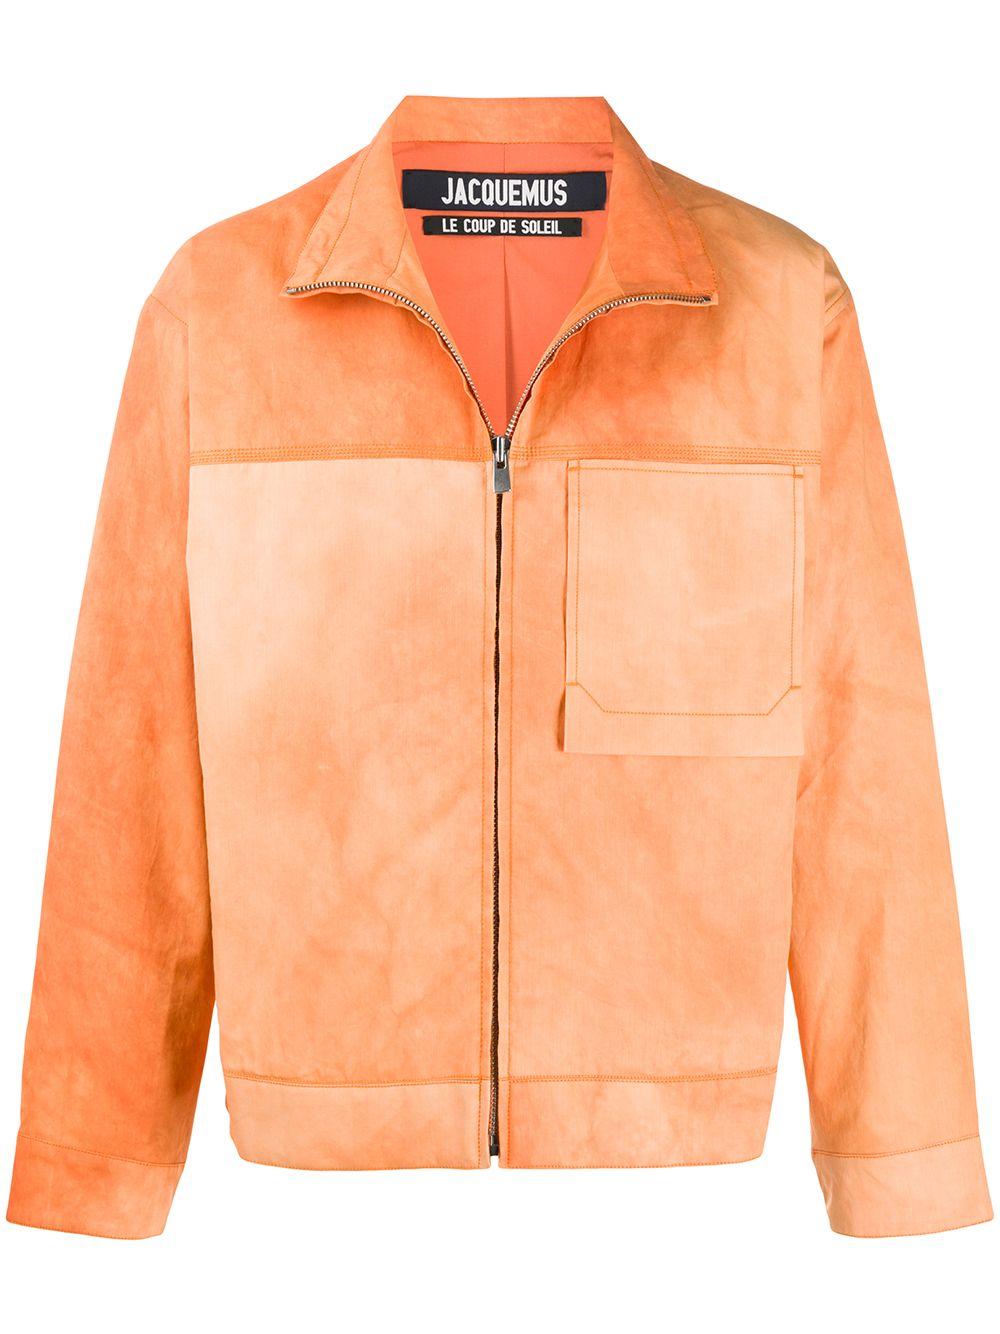 Jacquemus Cotton Le Blouson Valensole Jacket in Orange for Men - Lyst